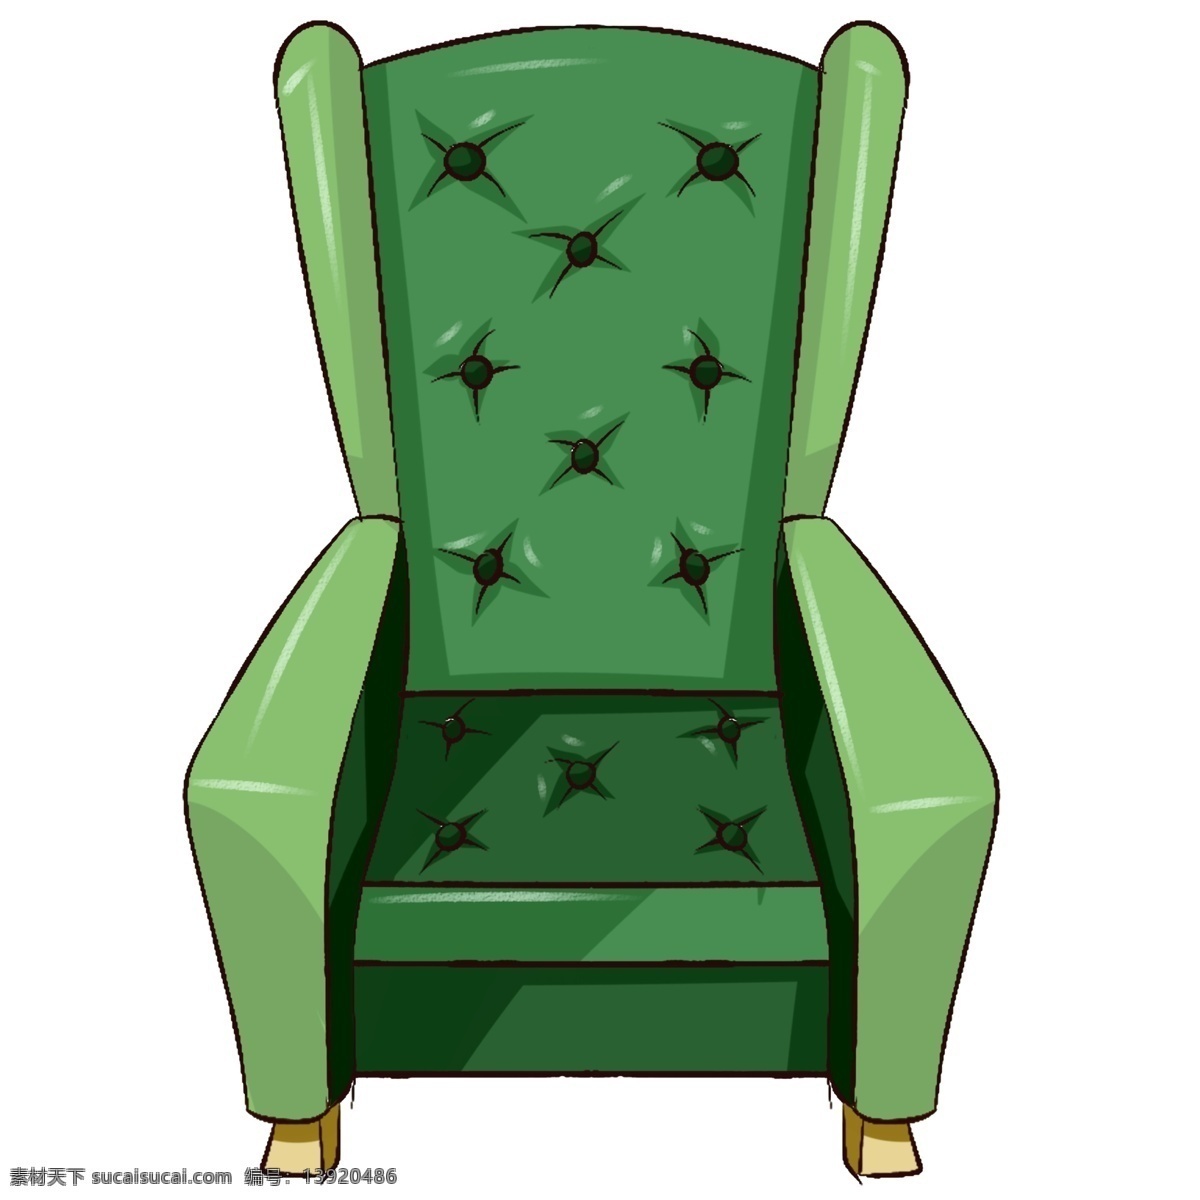 原创 手绘 家具 欧式 单人 沙发 绿色 简约 欧式沙发 海报素材 元素